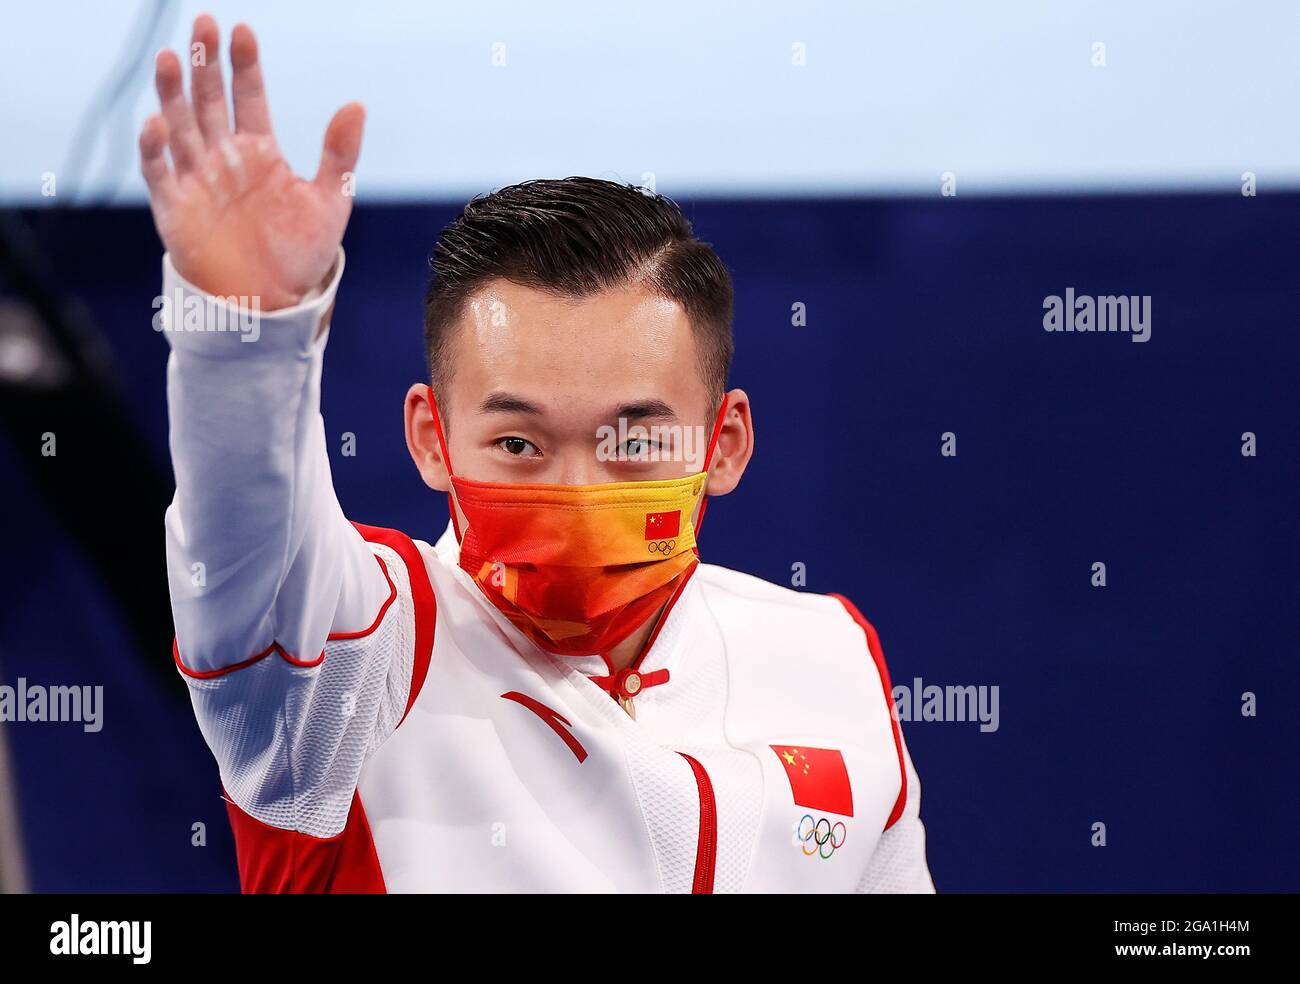 Tokio, Japan. Juli 2021. Xiao Ruoteng aus China reagiert nach dem Allround-Finale der Männer im Kunstturnen bei den Olympischen Spielen 2020 in Tokio, Japan, 28. Juli 2021. Quelle: Xinhua/Alamy Live News Stockfoto